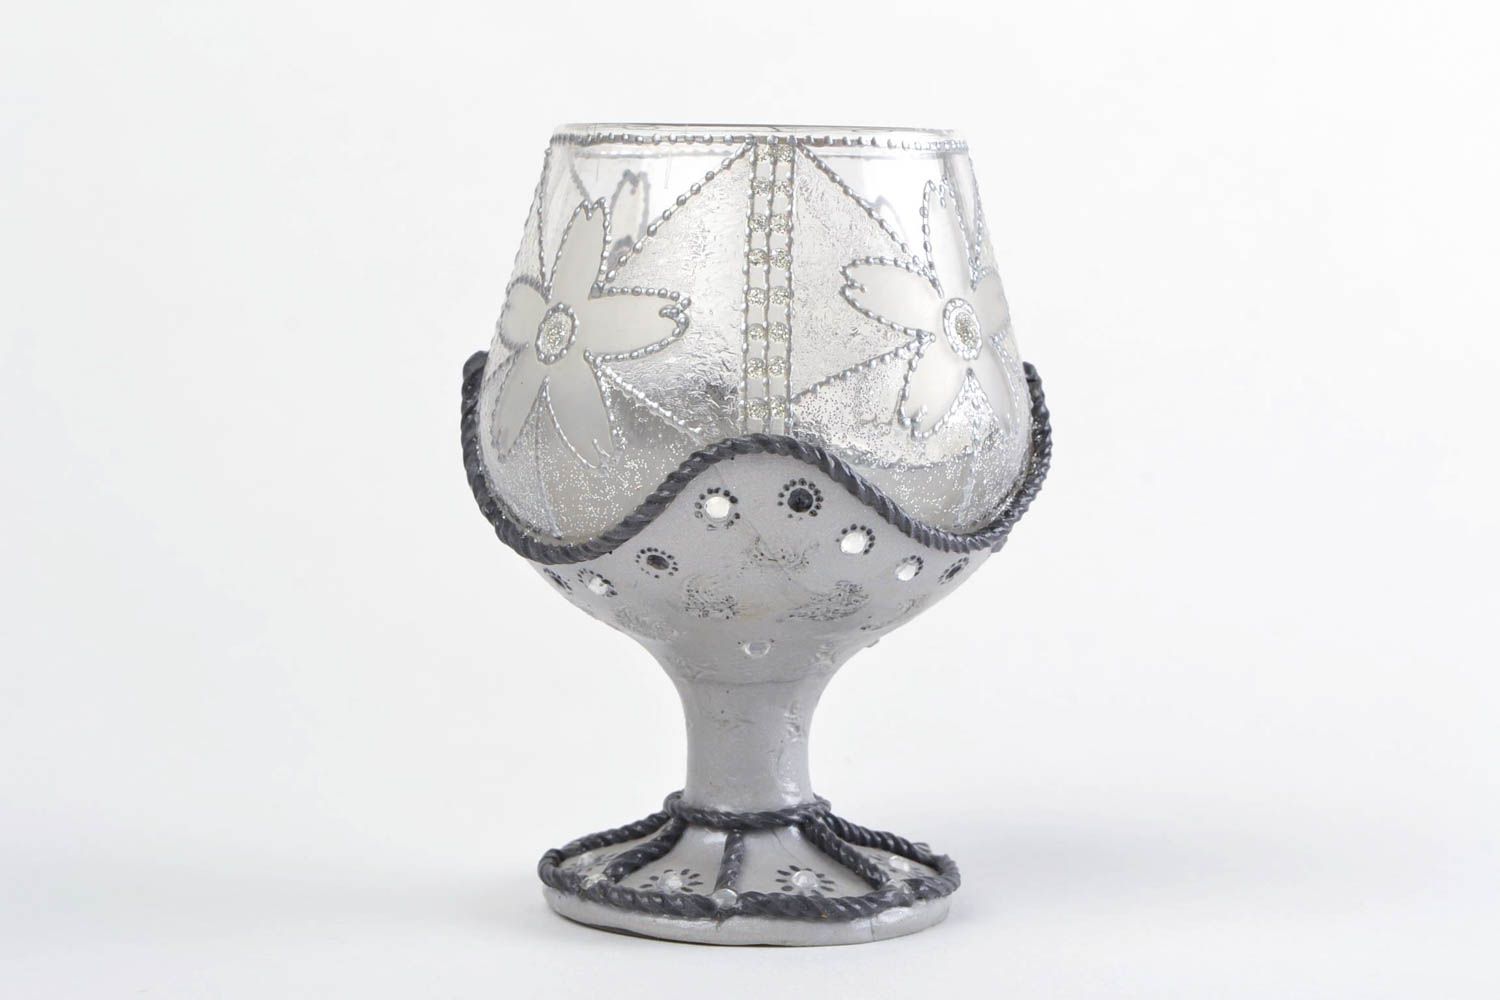 Joli chandelier en verre peint de couleurs acryliques fait main Flûte grise photo 5